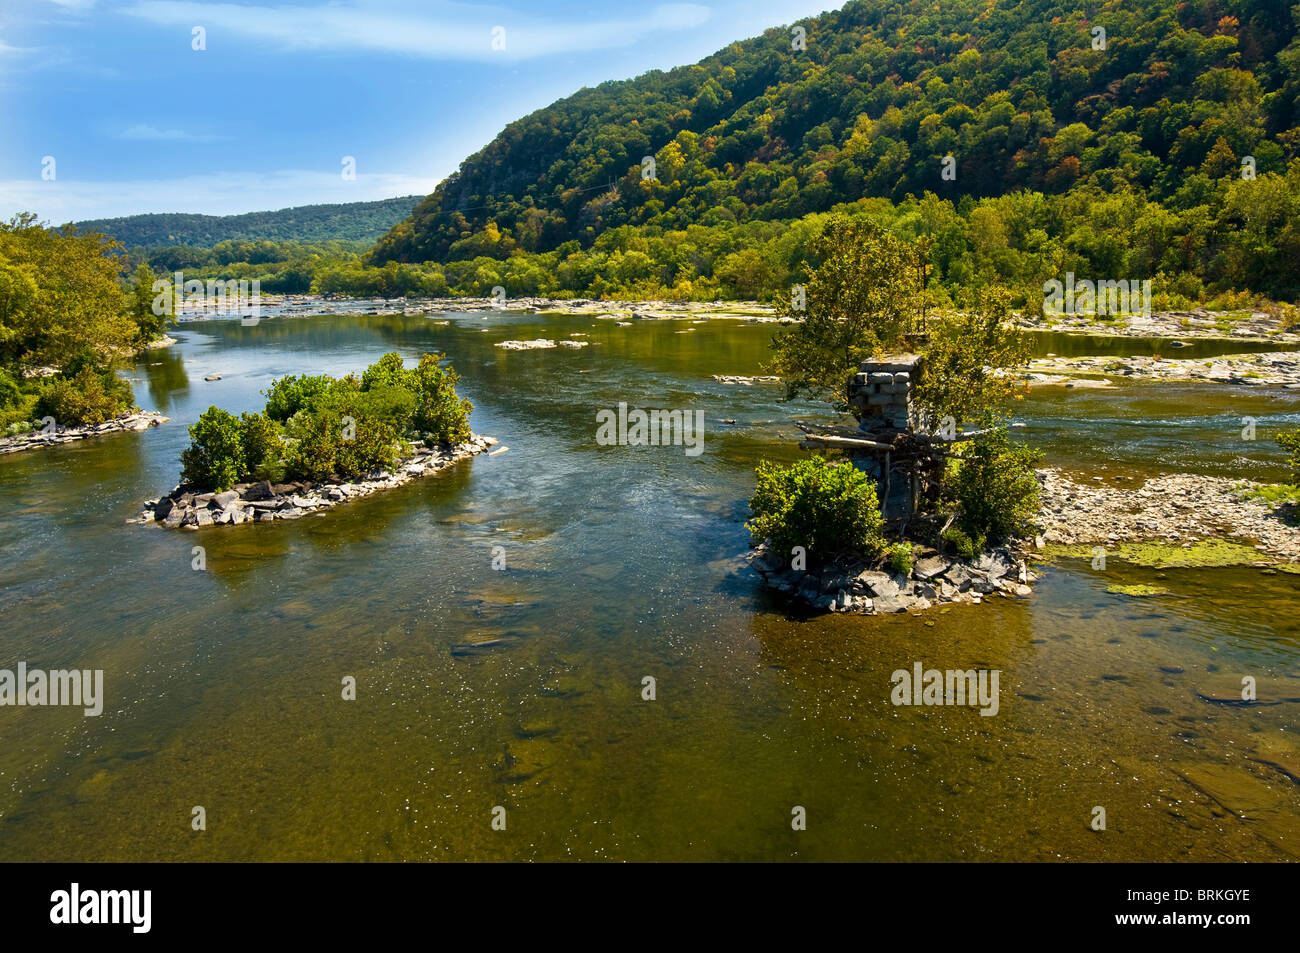 La confluencia de los ríos Potomac y Shenandoah de Harpers Ferry, Virginia Occidental Foto de stock